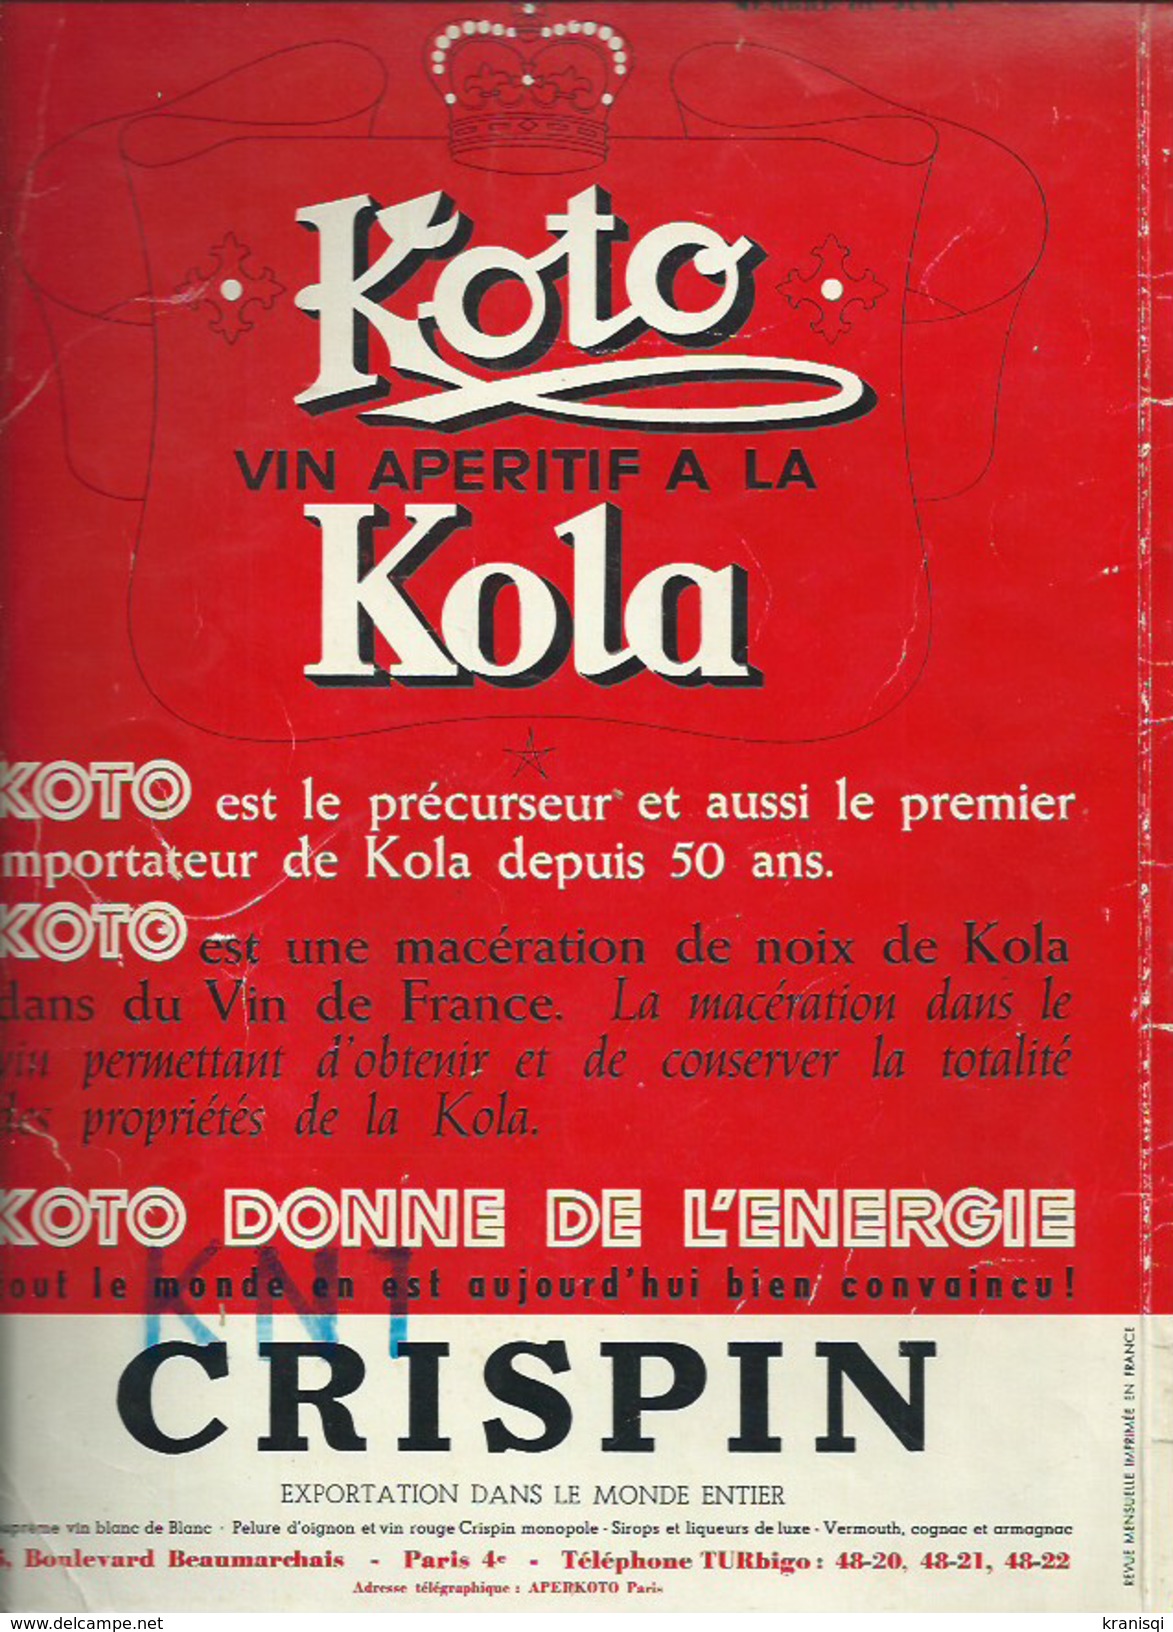 Livre , La Revue Vinicole  1951 - Cuisine & Vins